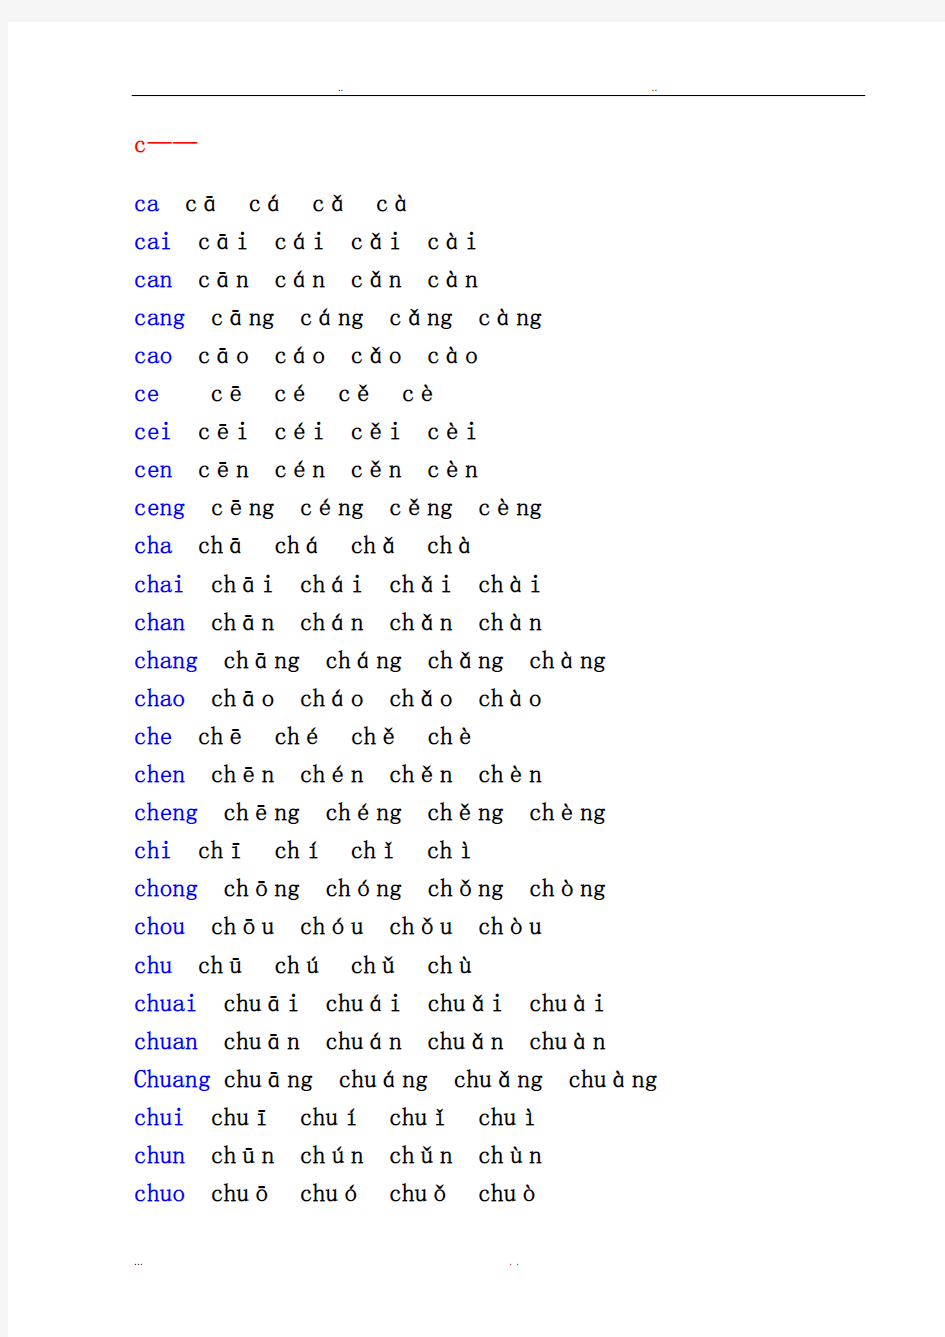 汉语拼音音节表(带声调音节)